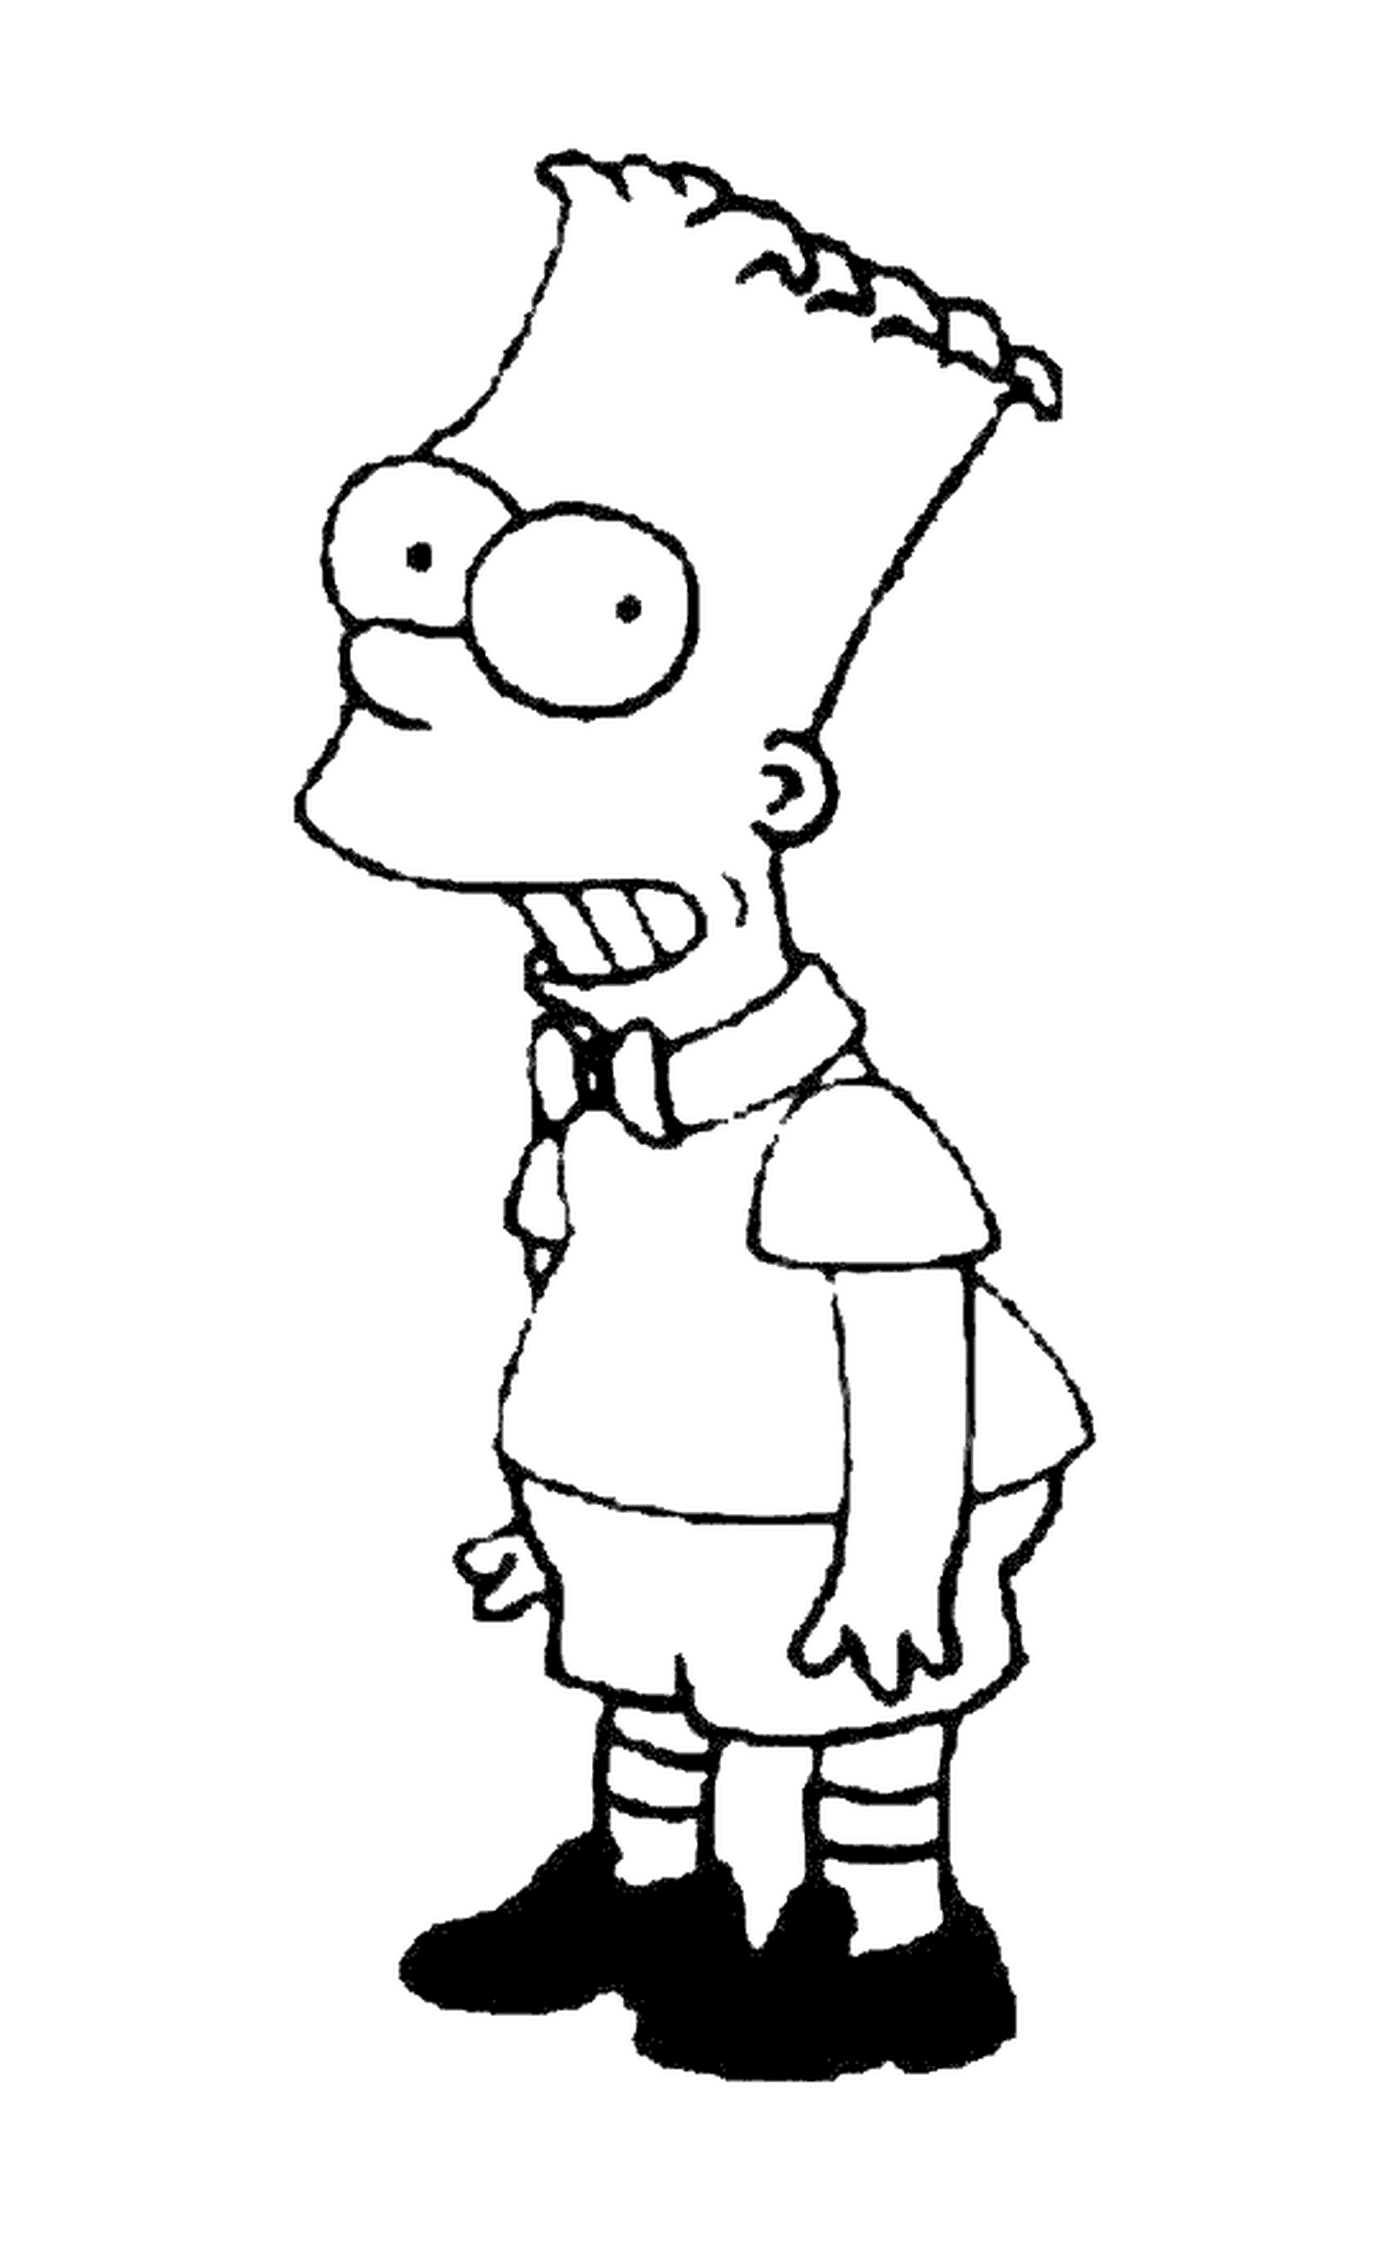  Bart als Modellkind, Charakter der Simpsons 